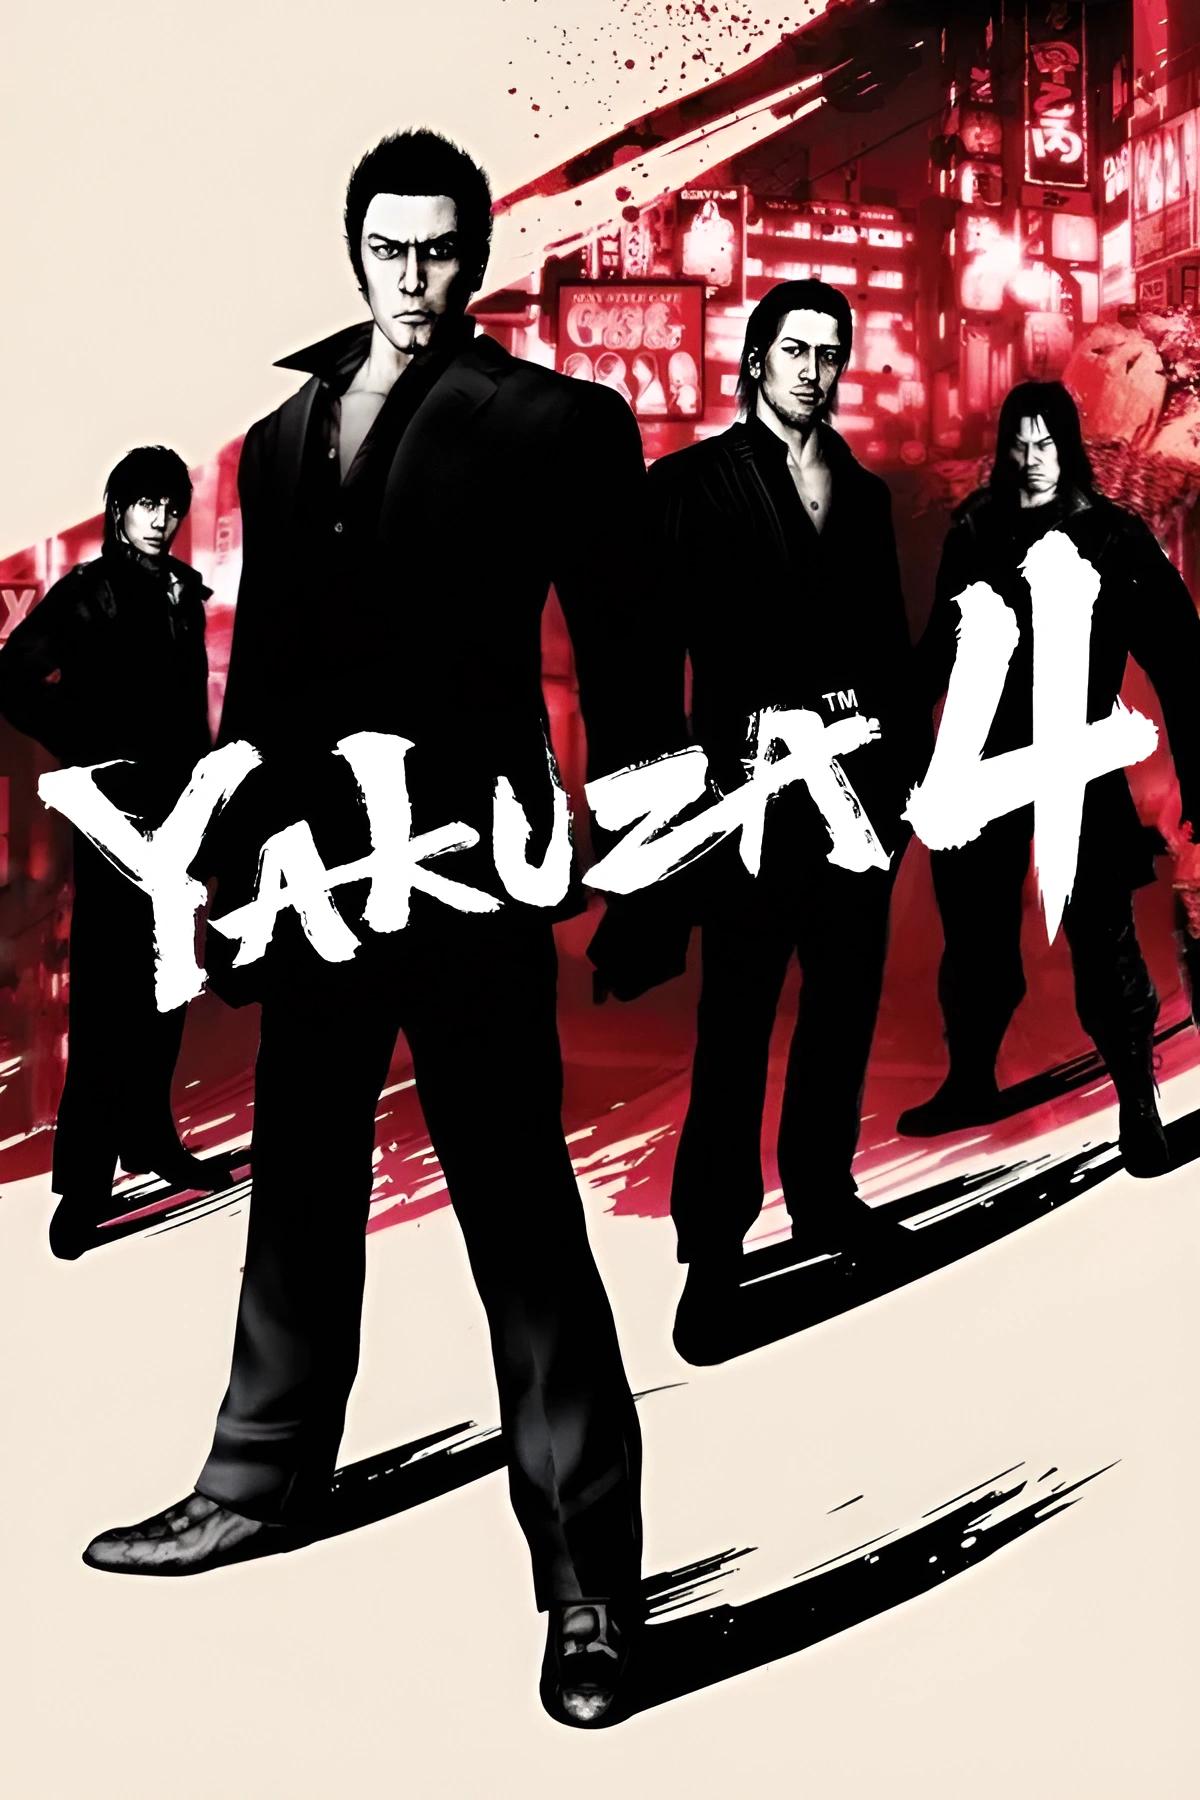 Yakuza 4